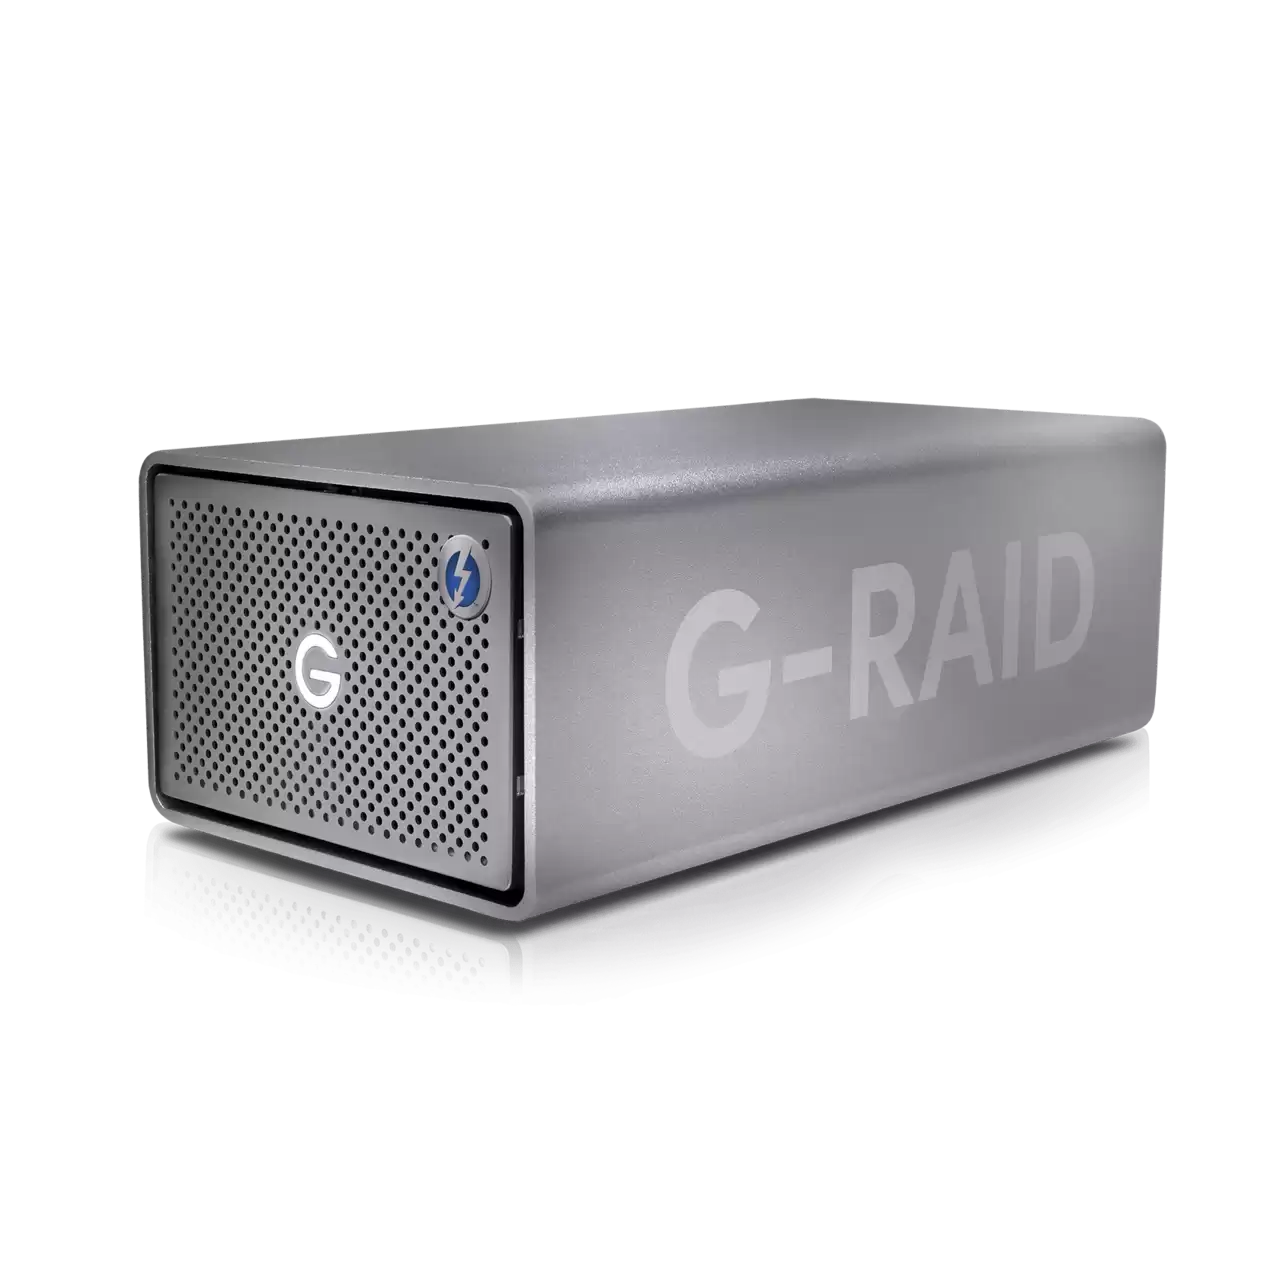 G-RAID 2 36TB USB 